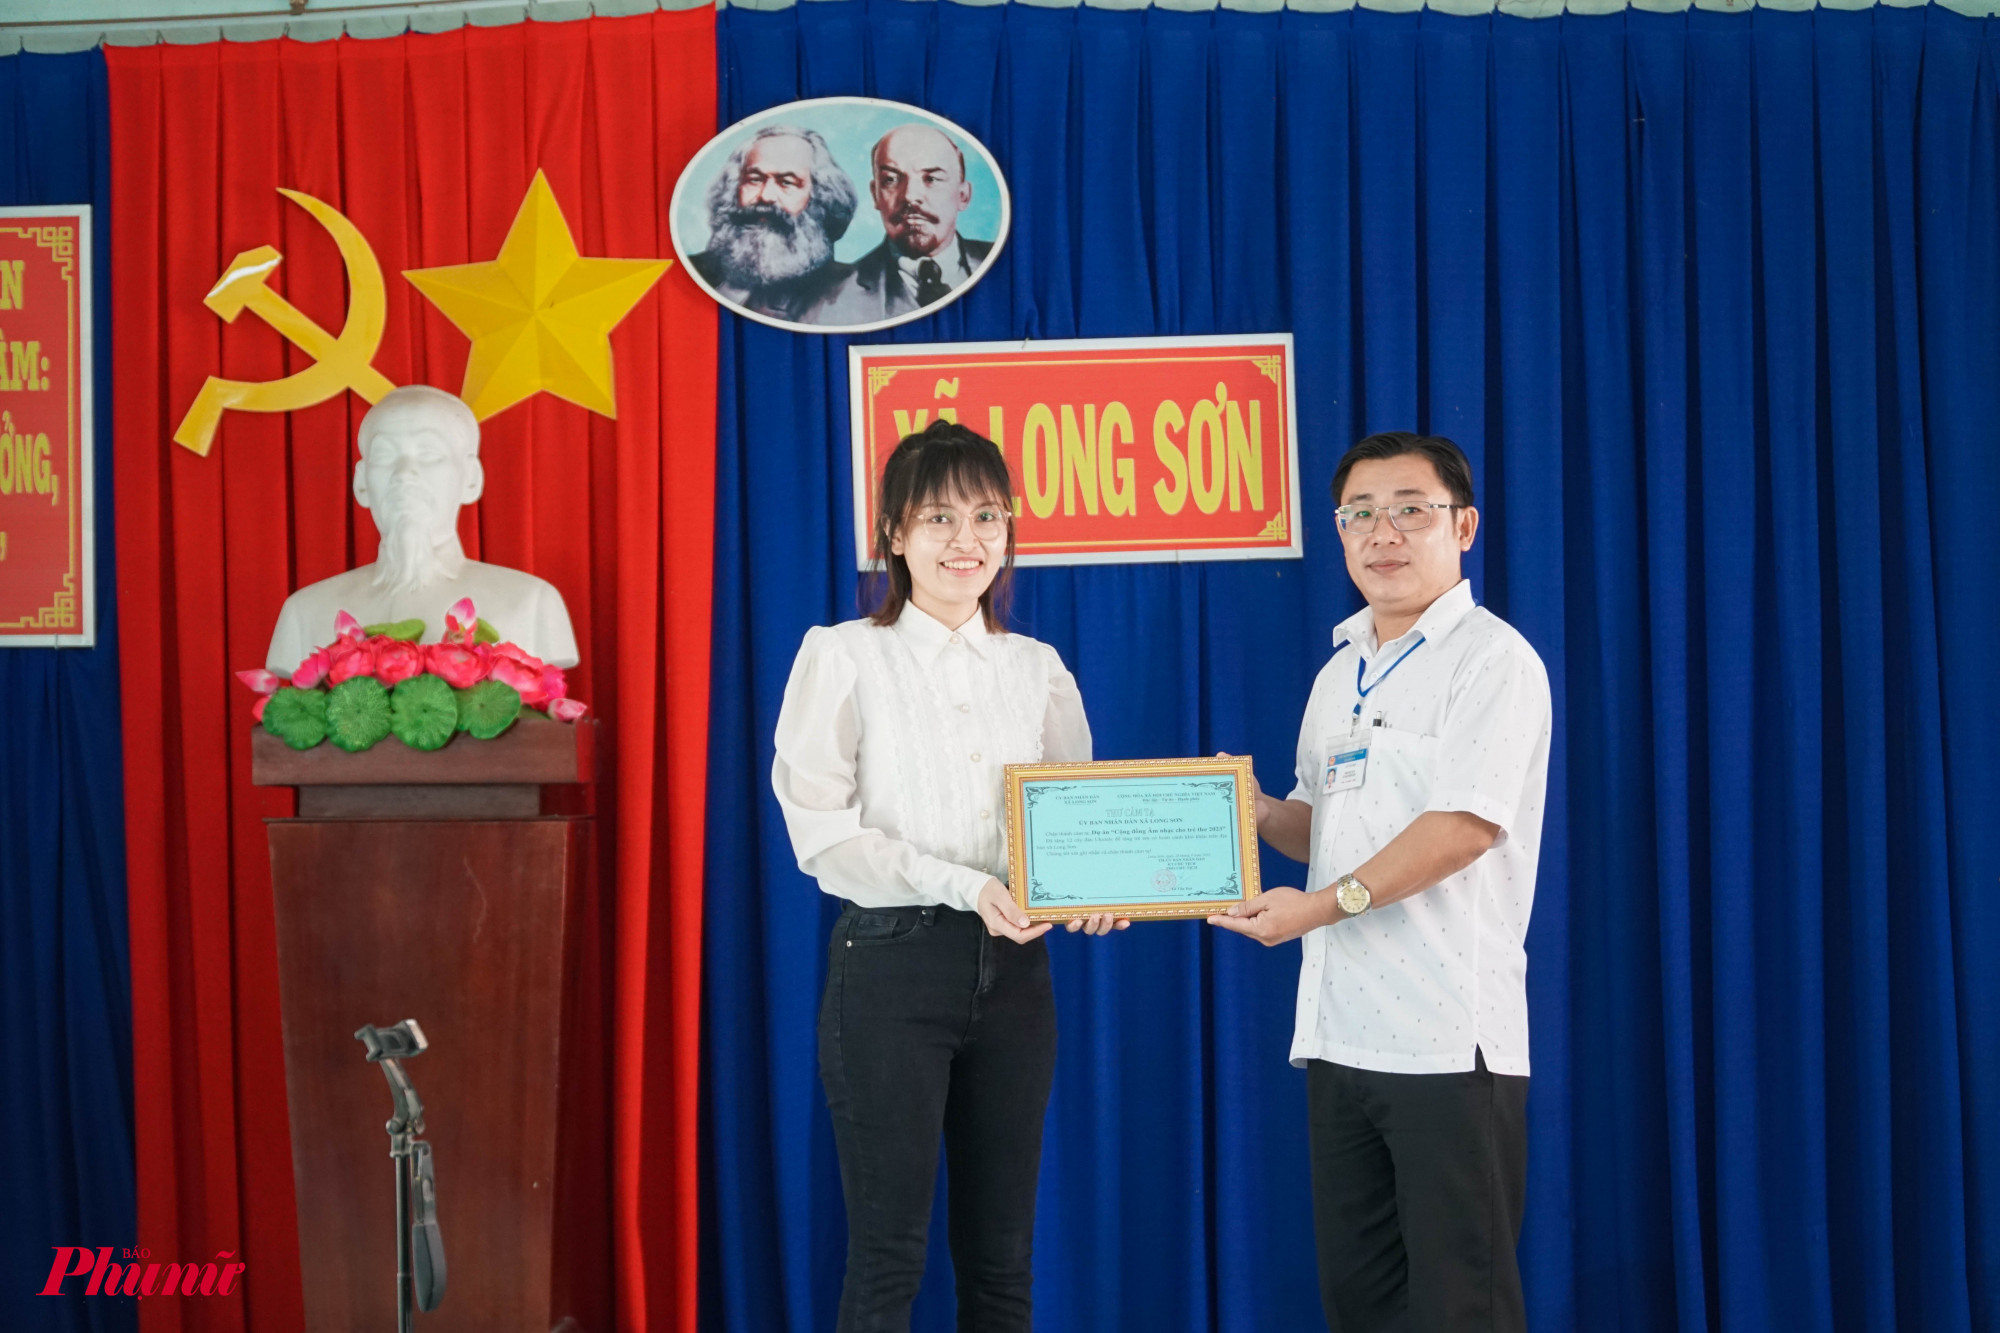 Ông Lê Tấn Đạt Phó chủ tịch UBND xã Long Sơn trao thư cảm ơn đến dự án 'Âm nhạc cho trẻ thơ